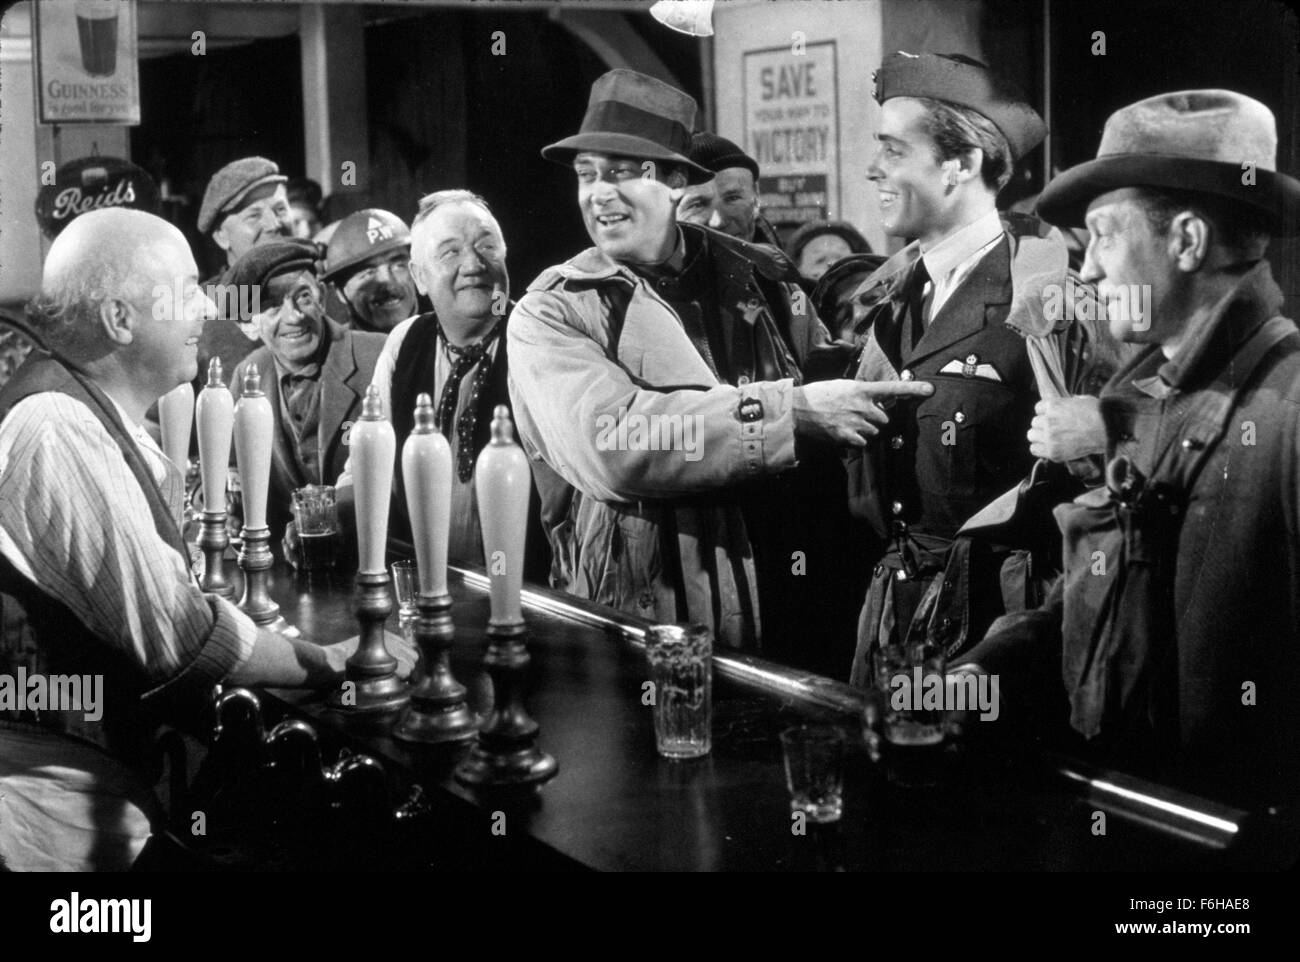 1942, Filmtitel: Mrs MINIVER, Regie: WILLIAM WYLER, Studio: MGM, abgebildet: 1942, AWARDS - Akademie, das beste Bild, ENSEMBLE, RICHARD NEY, WALTER PIDGEON, BAR, OSCAR RETRO, OSCAR (Film), trinken, Alkohol, MILITARY, POINTING, männliche Verklebung. (Bild Kredit: SNAP) Stockfoto